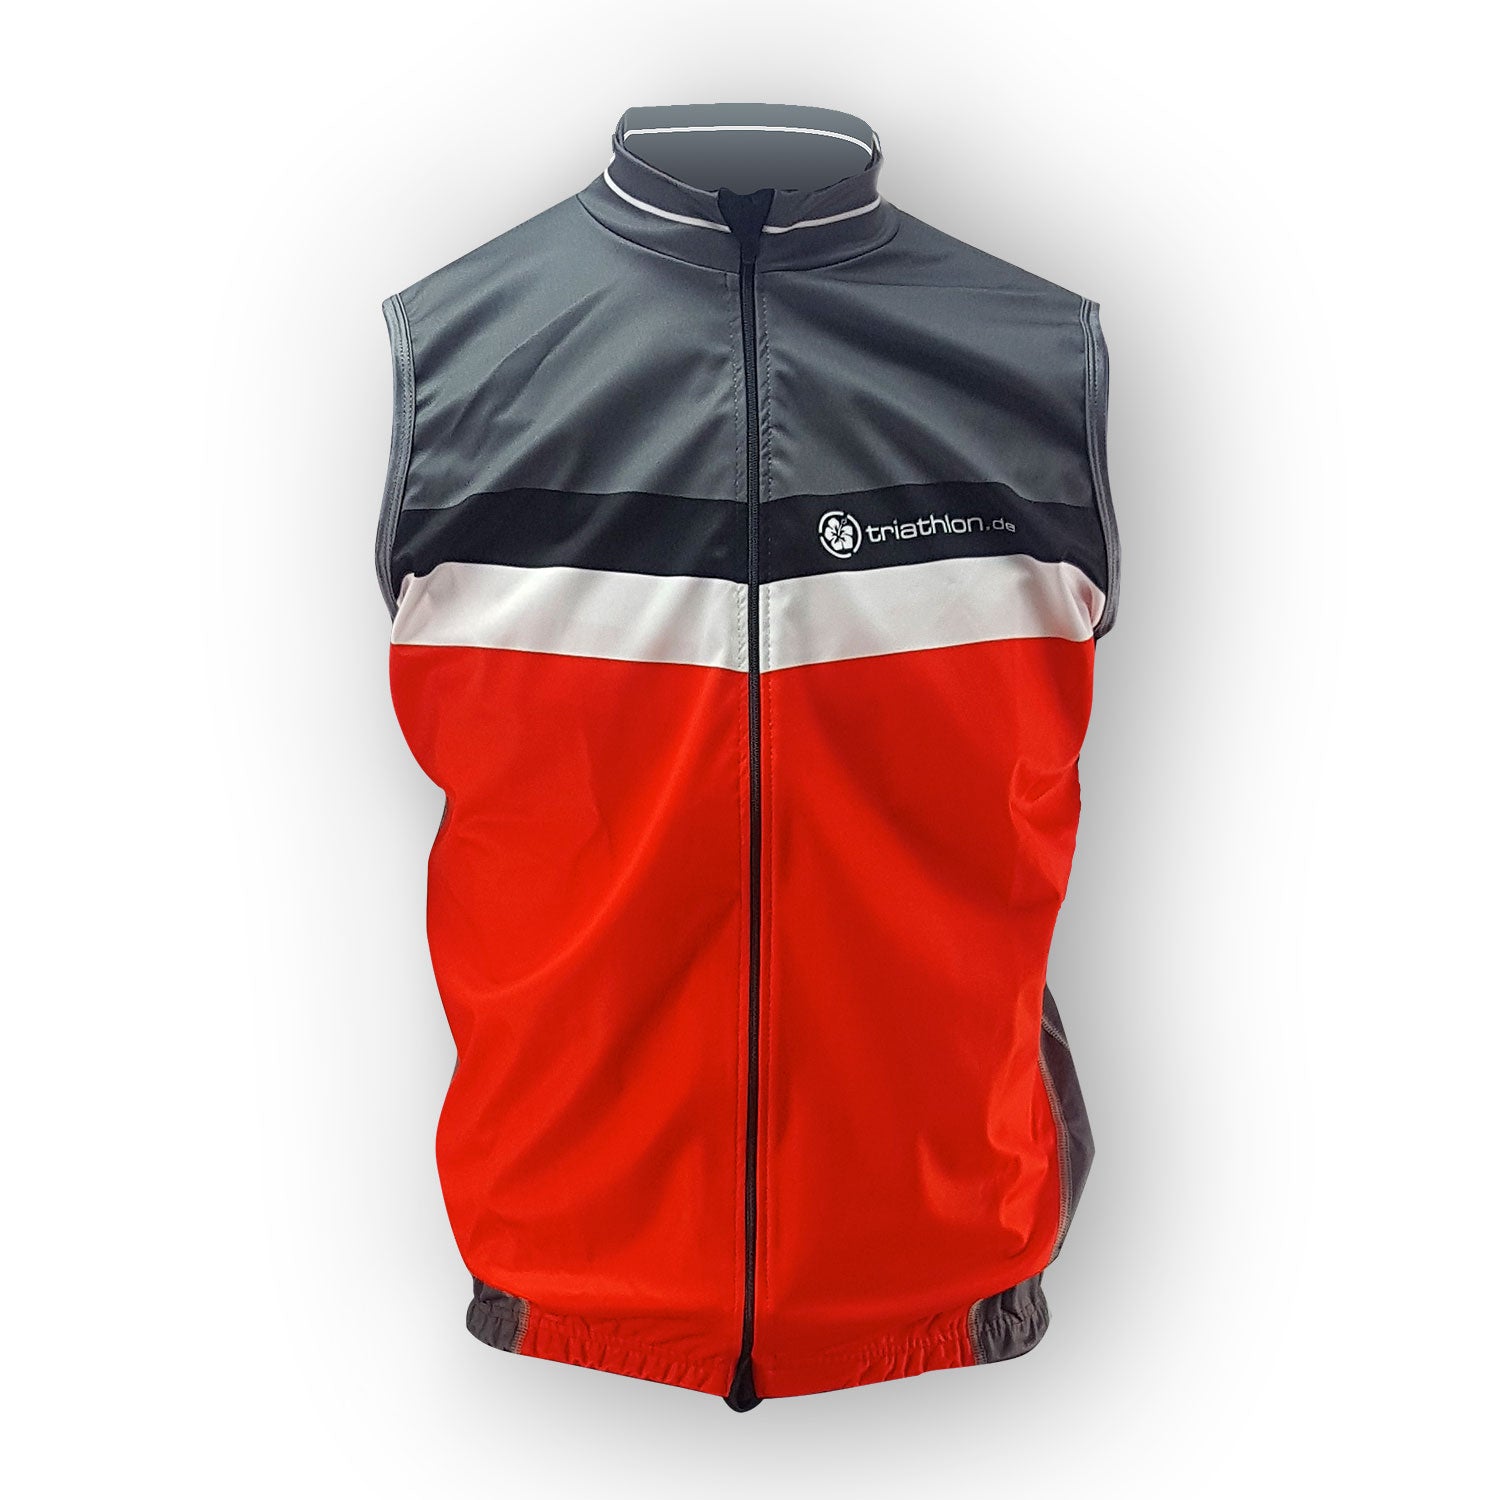 triathlon.de elite cycling vest, men, black/grey/red